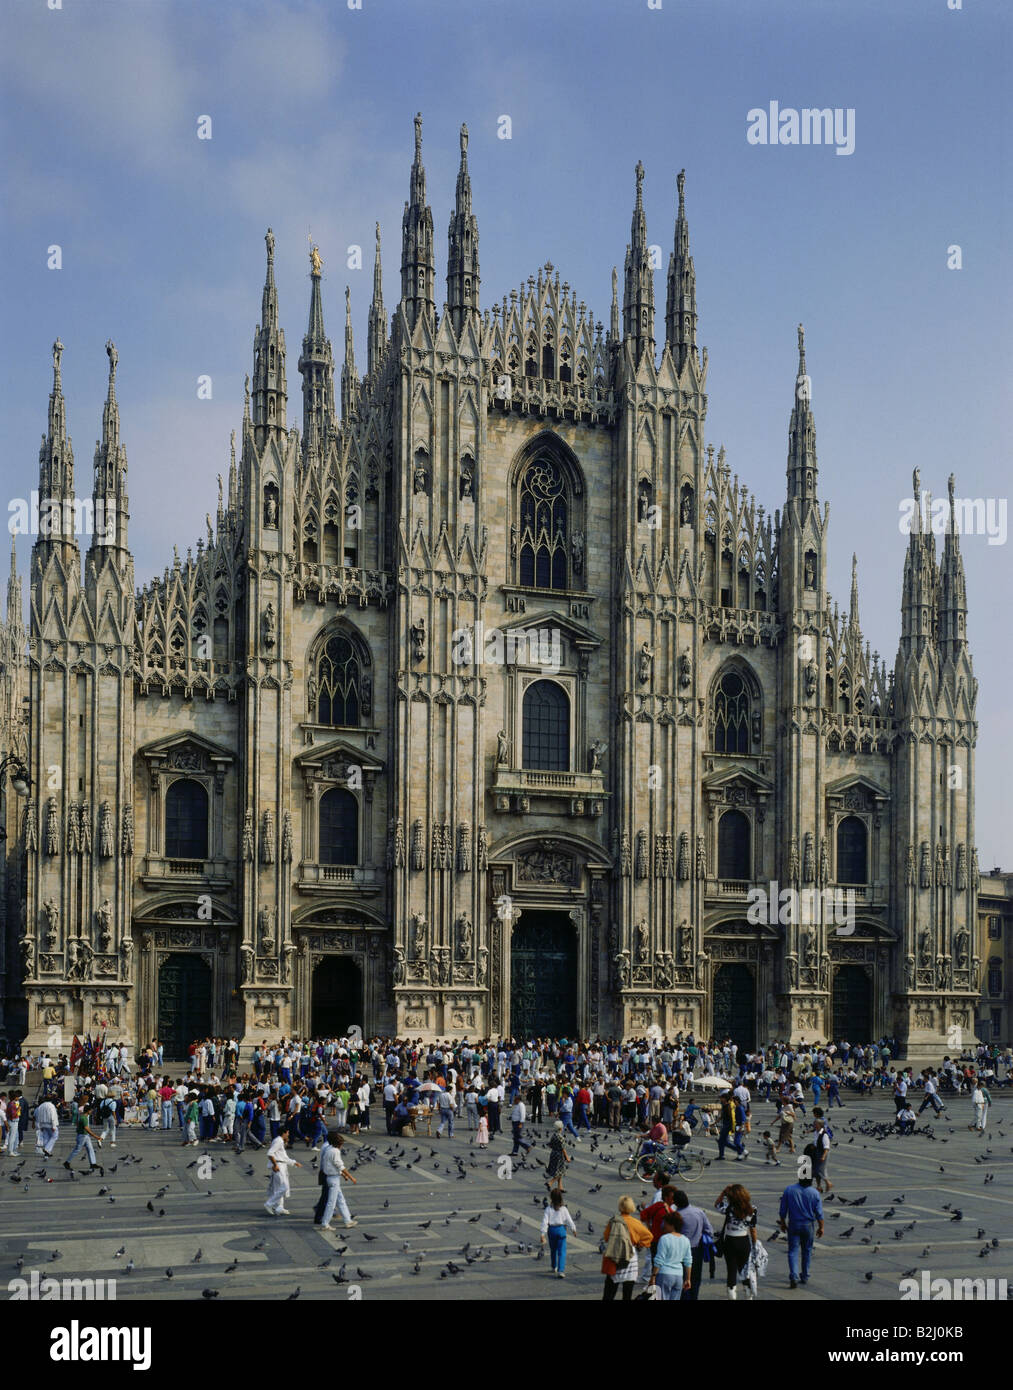 Geografia / viaggio, Italia, Milano, chiese, cattedrale, Duomo, vista esterna, gotico, architettura, chiesa, Foto Stock